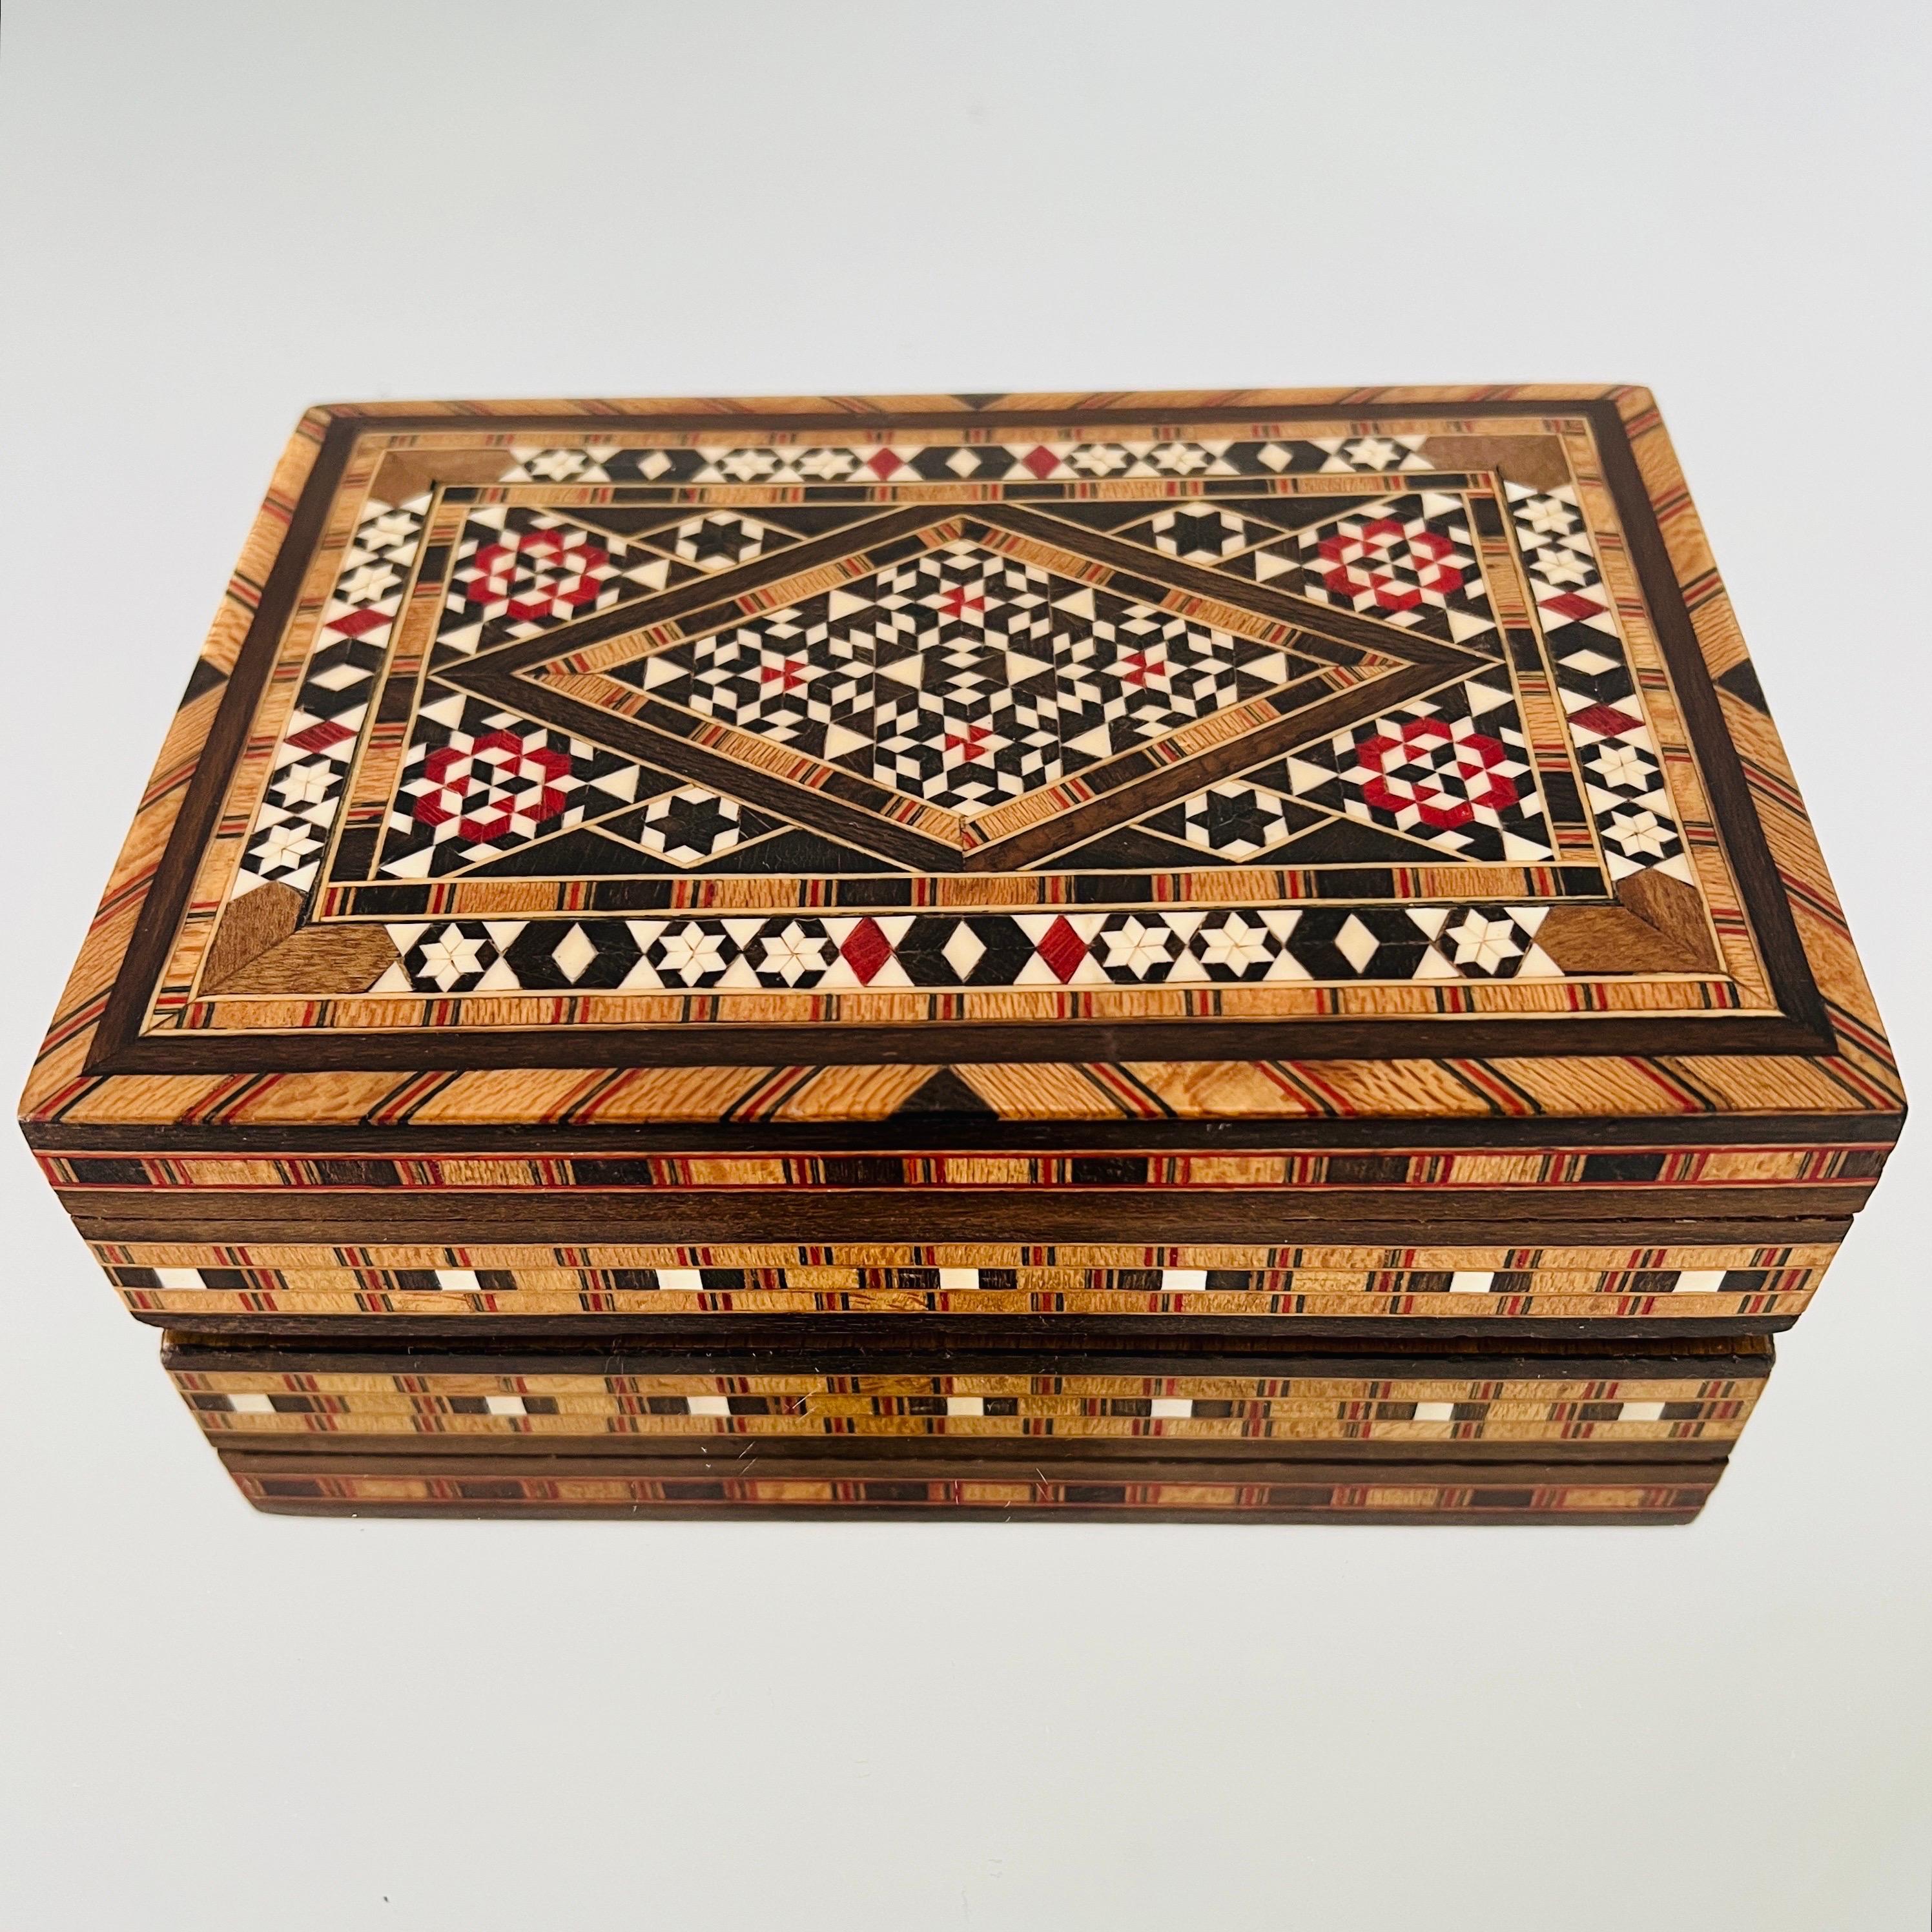 Exquisite, handgefertigte Khatam-Holzschatulle mit Mikro-Mosaik-Einlegearbeit, einer altpersischen Technik der Einlegearbeit.  Kästchen im maurischen Stil mit geometrischen Intarsien aus Holz und Knochen. Handwerkliche Verarbeitung mit